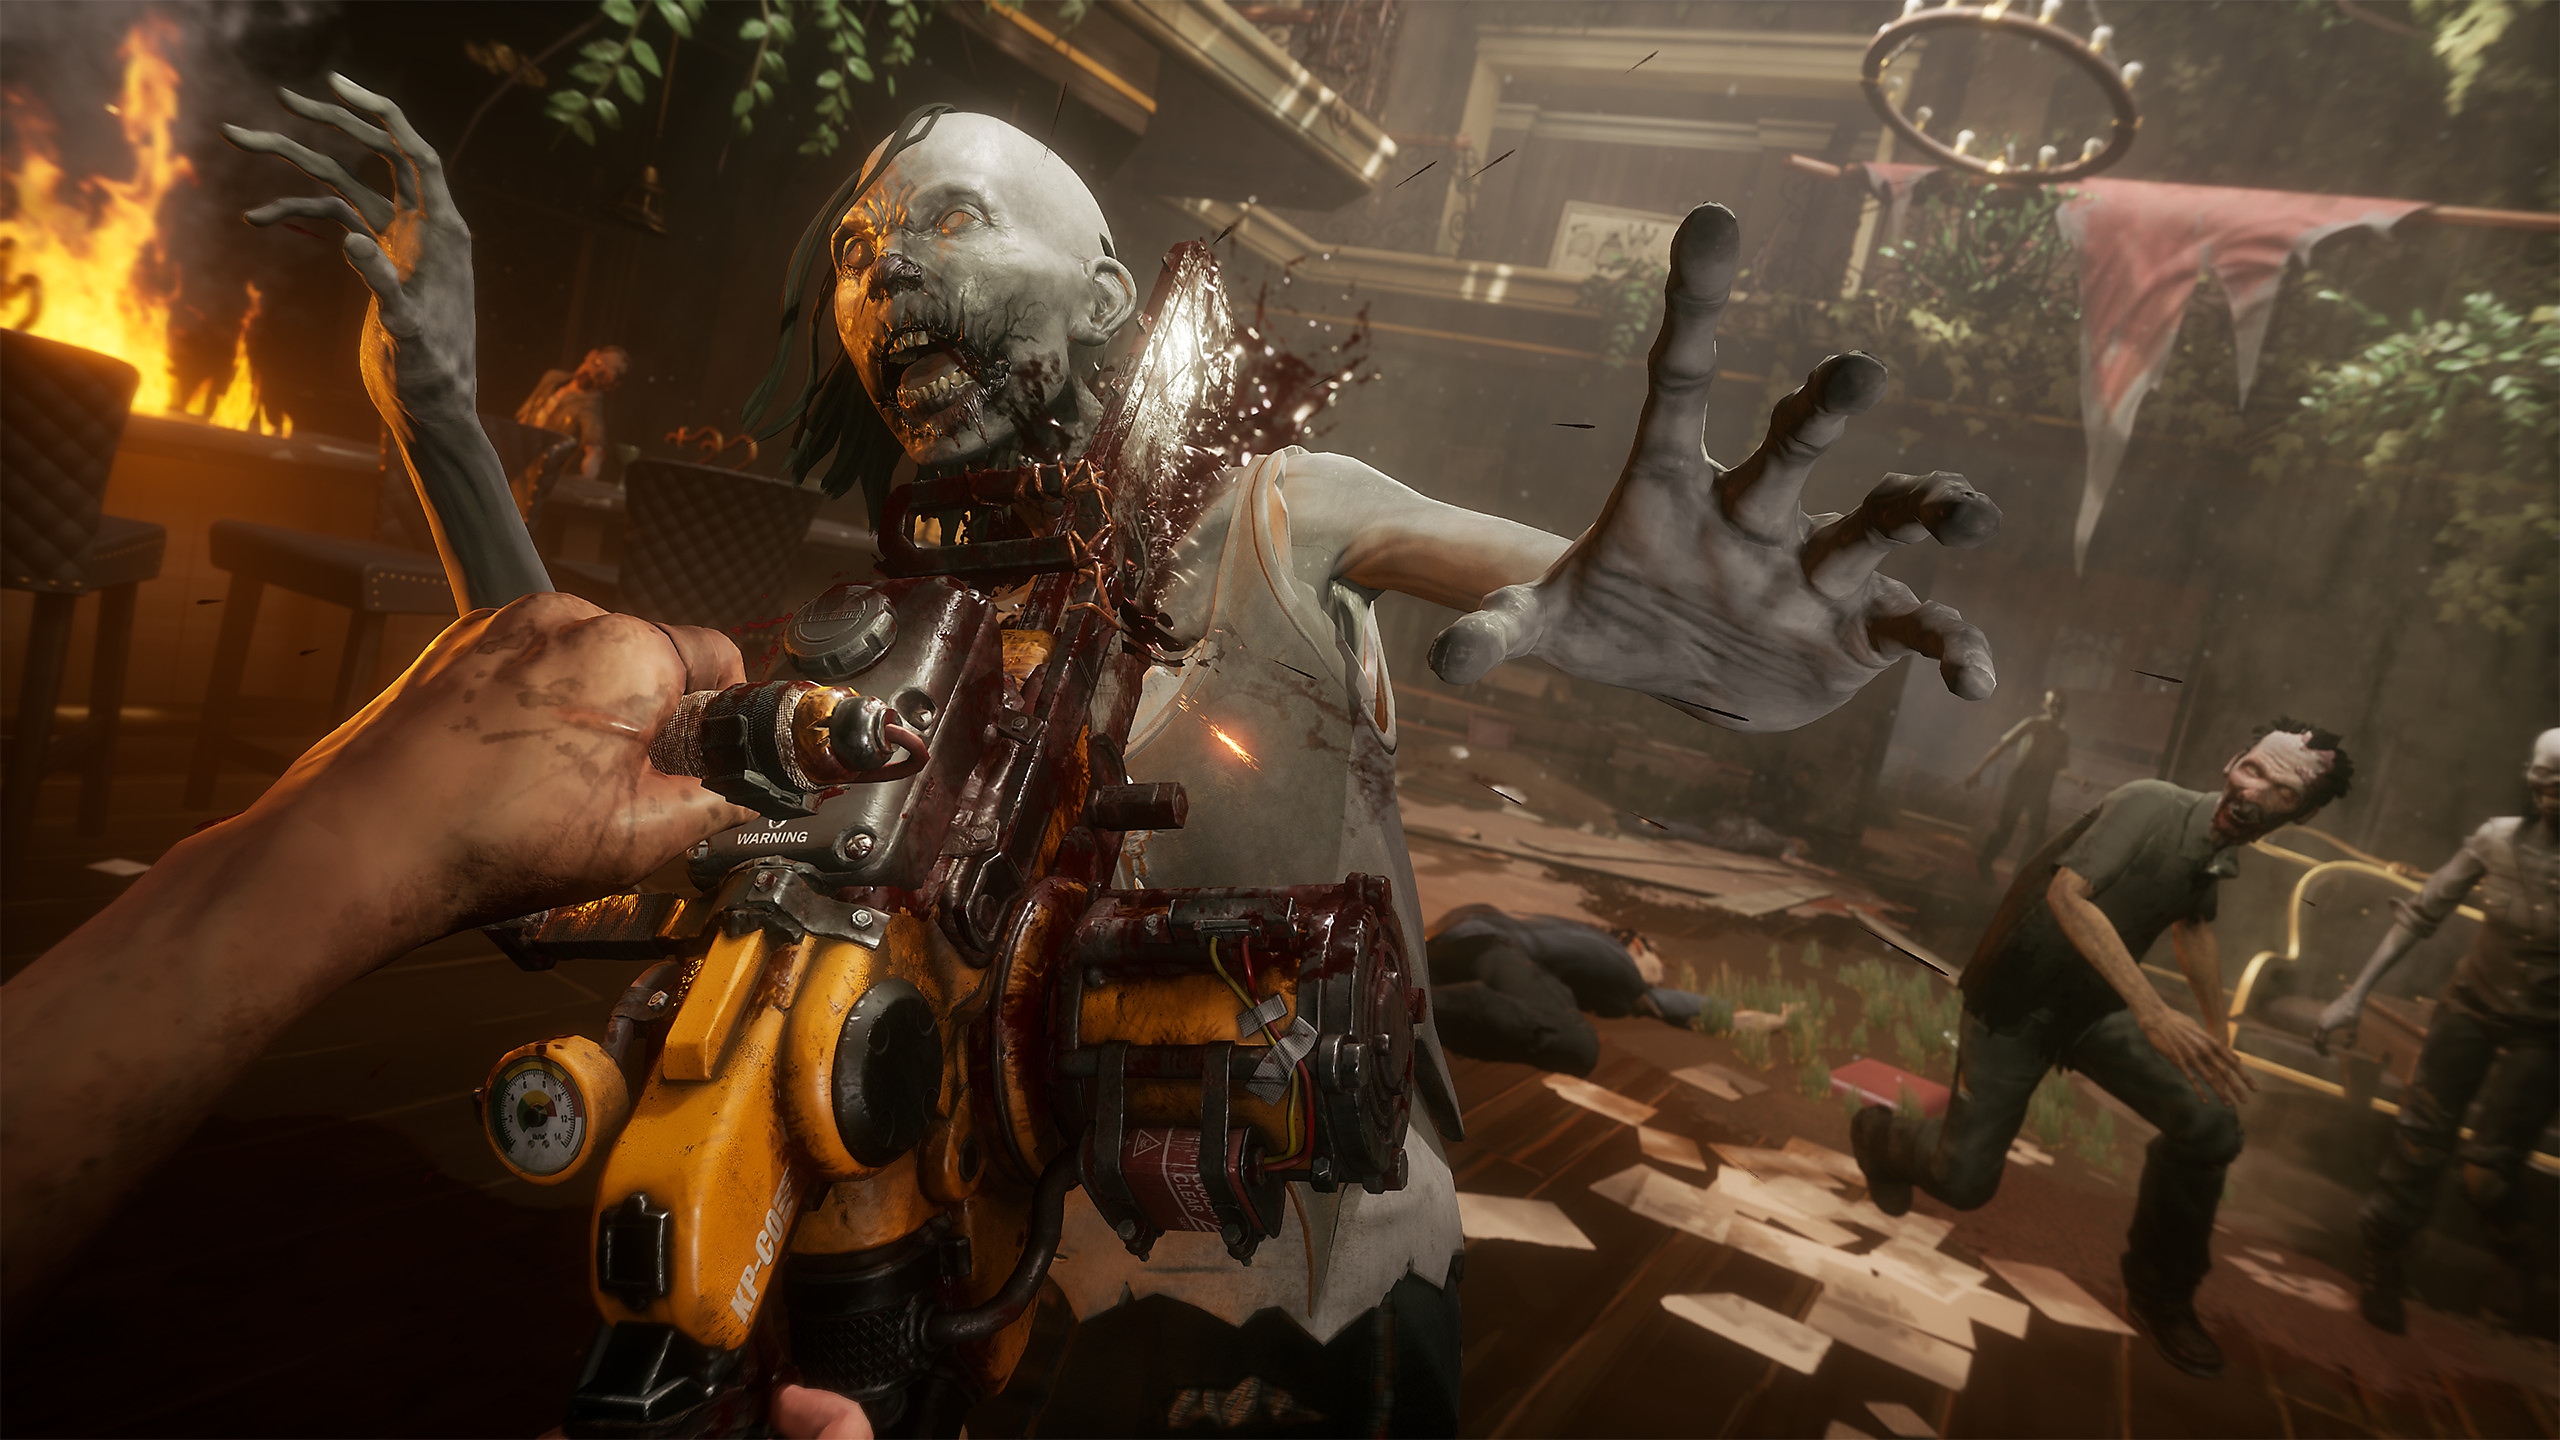 Captura de pantalla de TWDSS Chapter 2 que muestra un zombi siendo asesinado con una motosierra